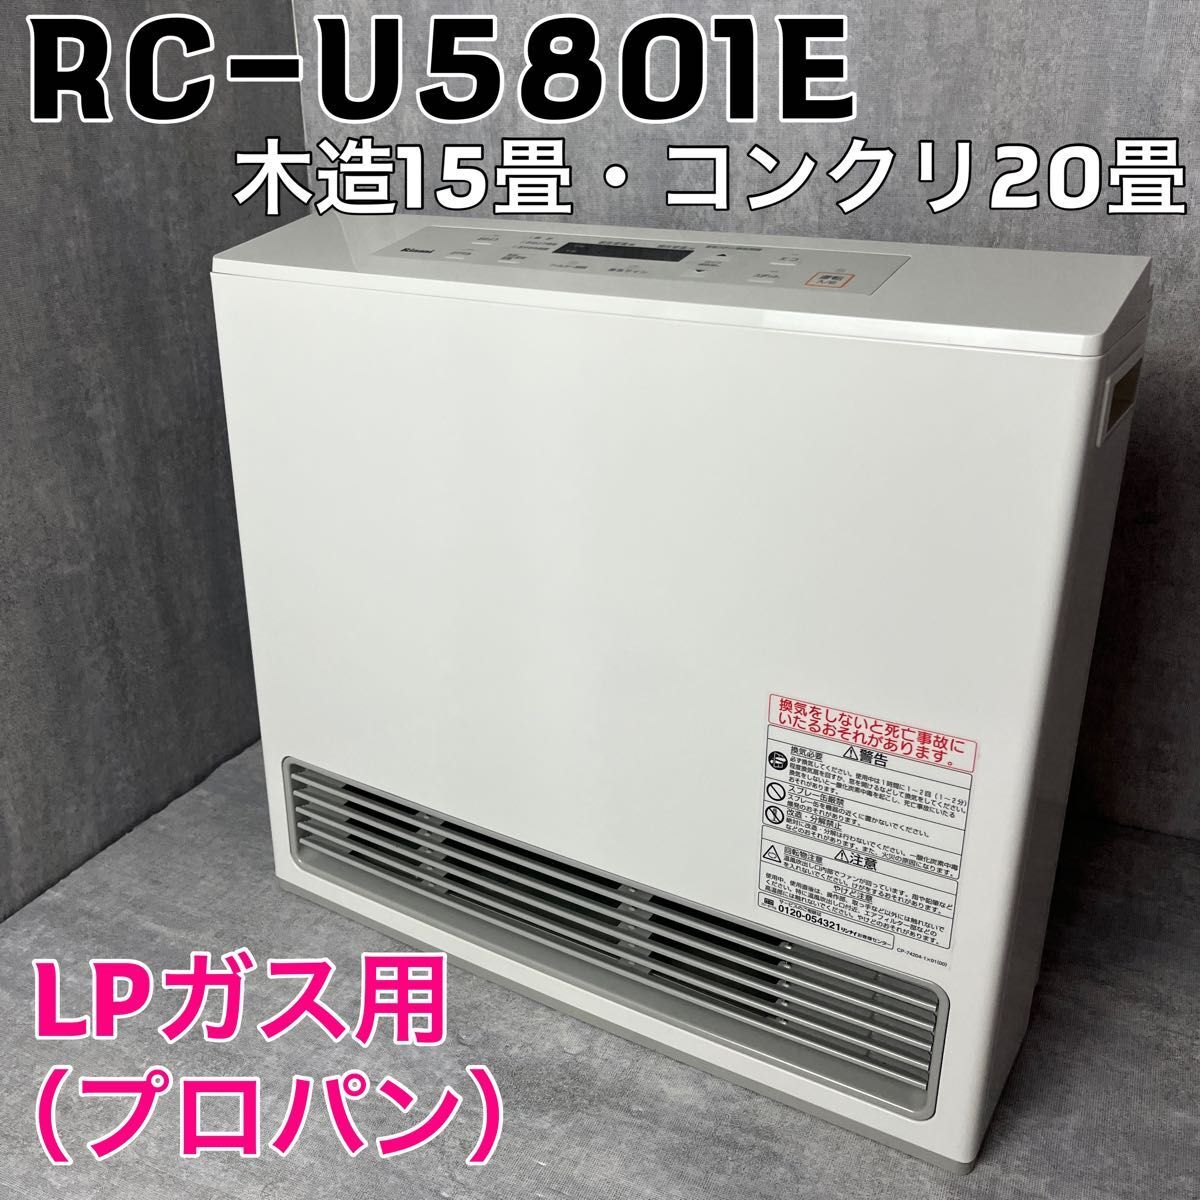 リンナイ ガスファンヒーター RC-U5801E LPガス専用 プロパンガス